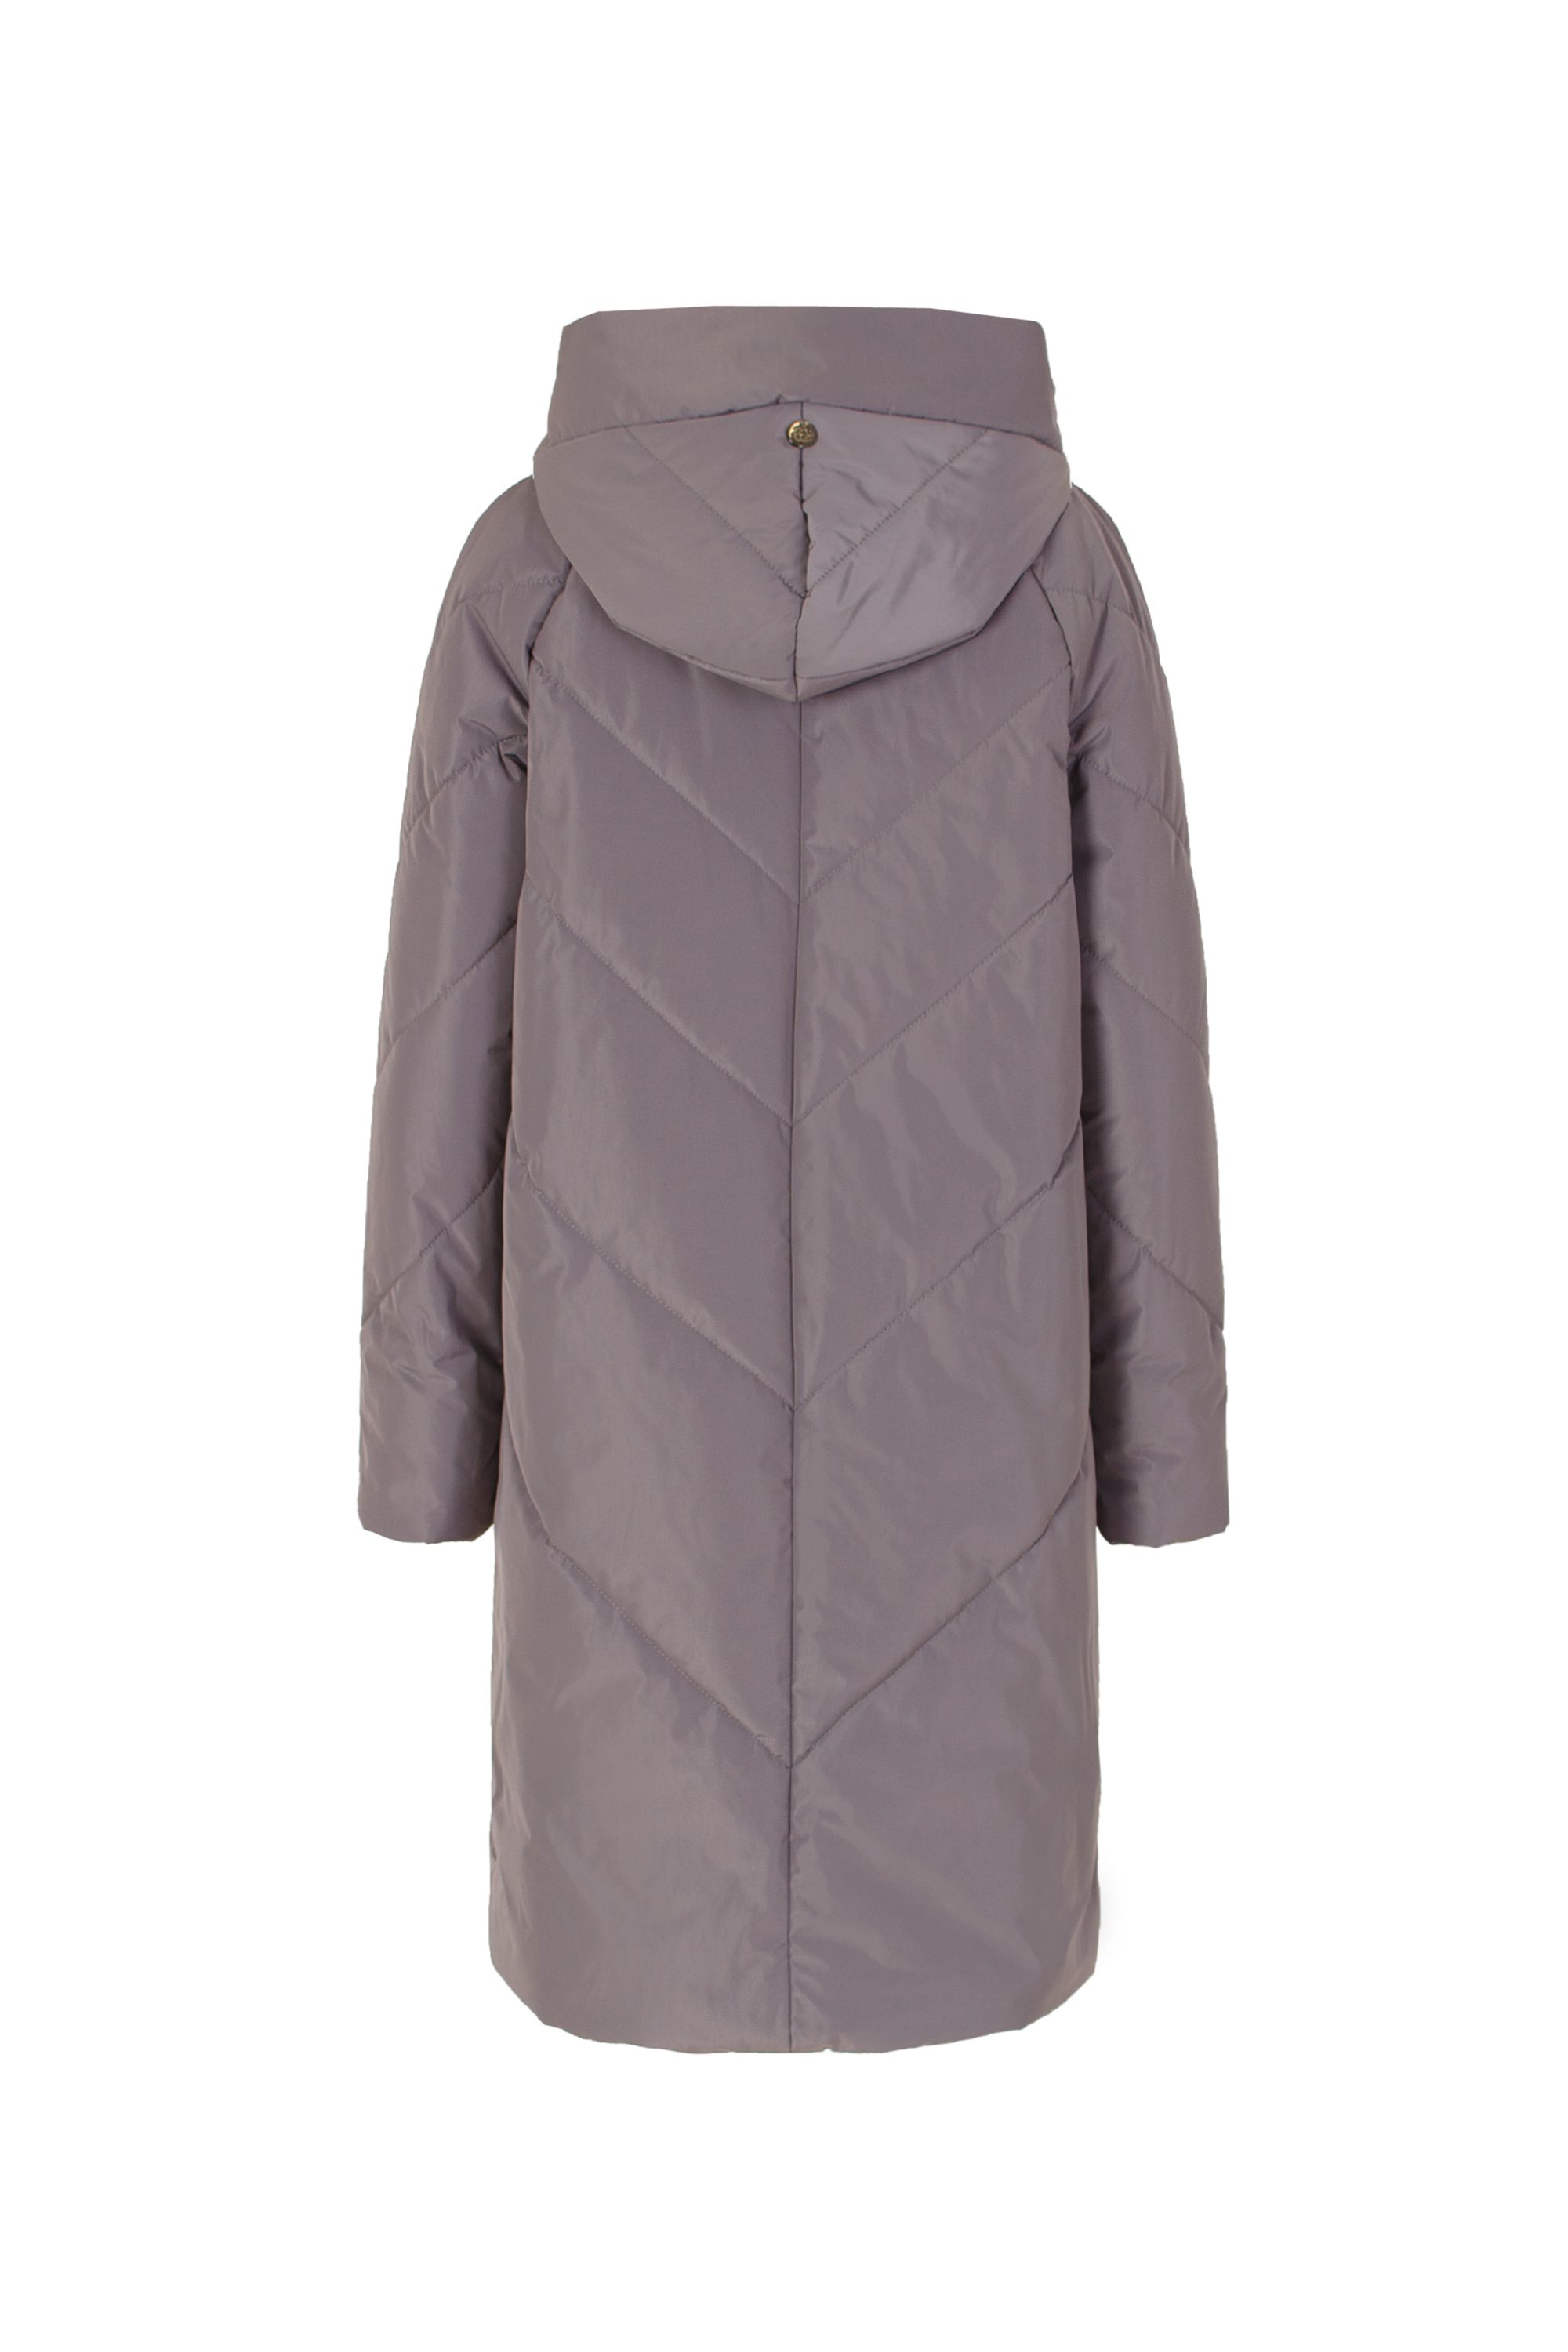 Пальто женское плащевое утепленное 5-9196-4. Фото 3.